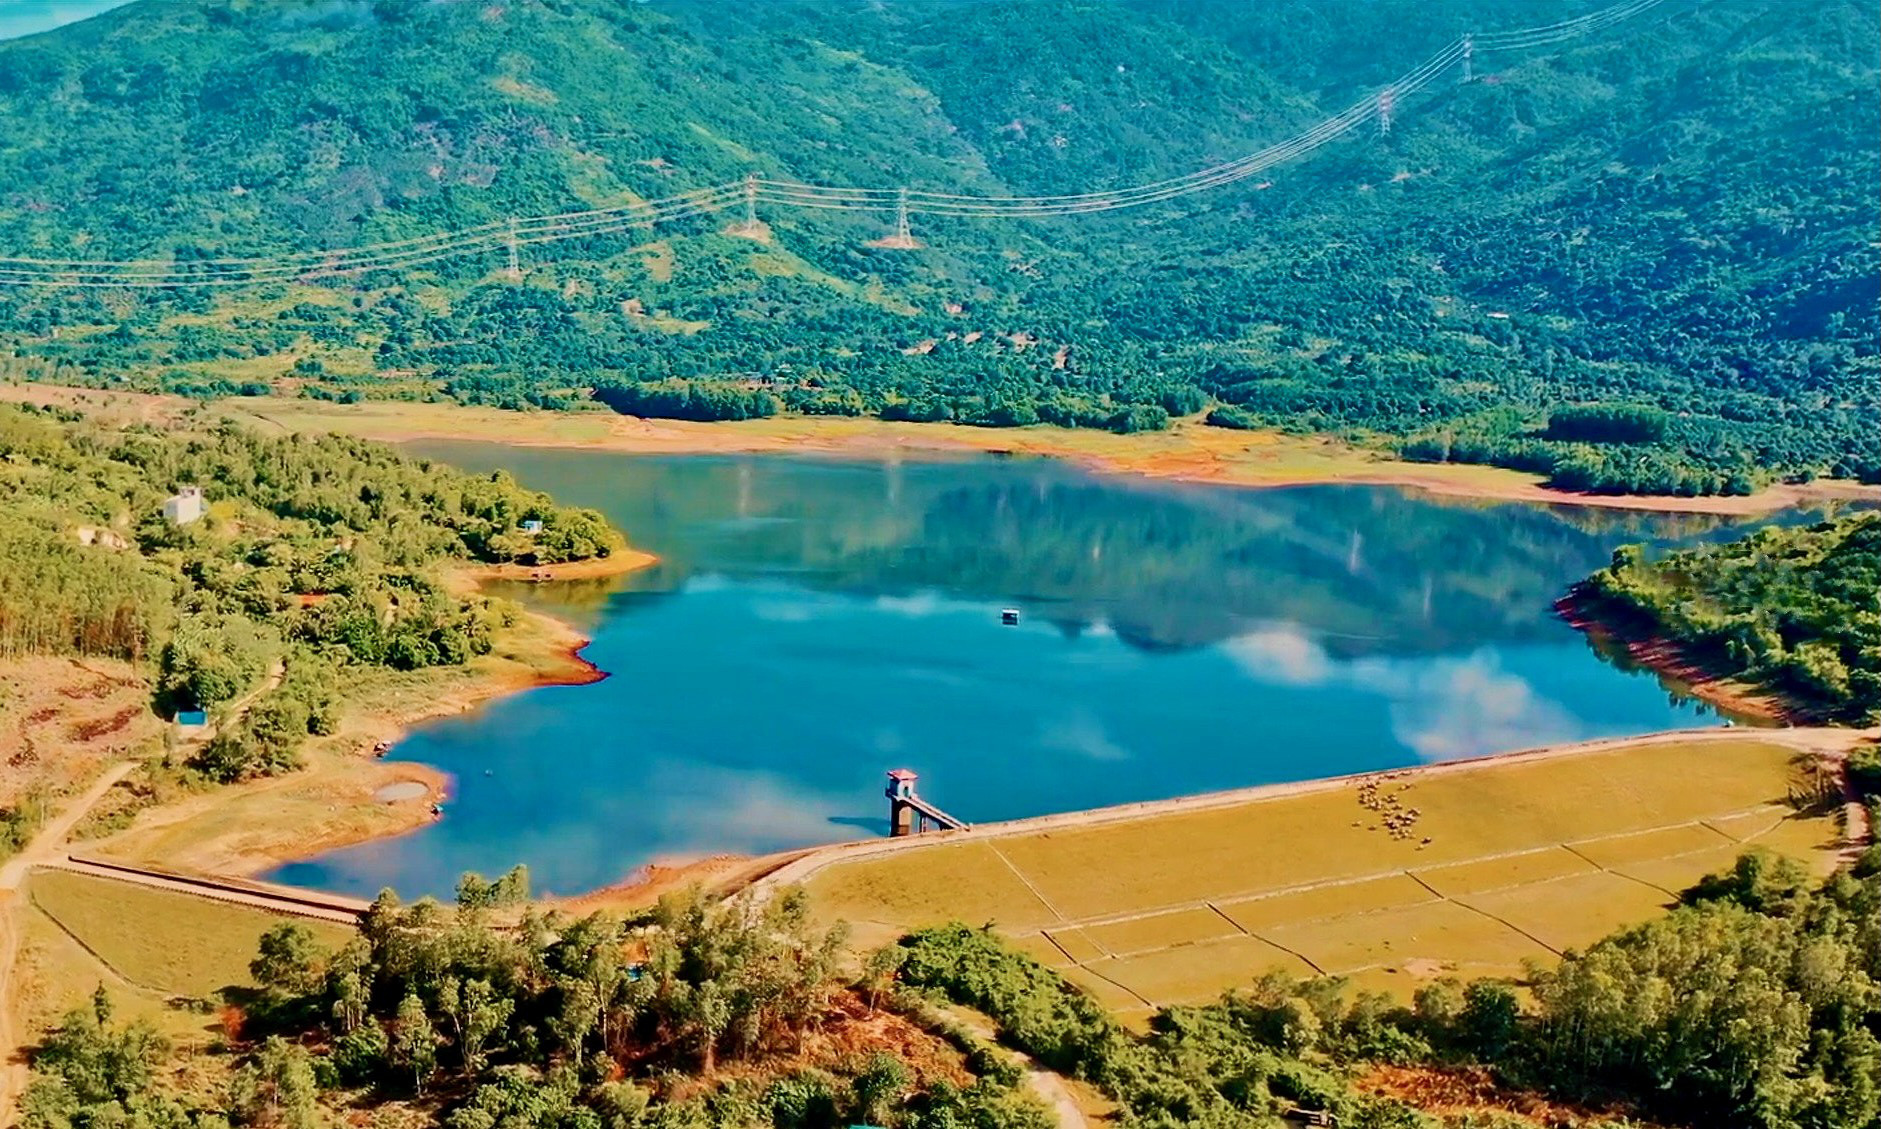 Hồ Am Chúa với màu nước trong xanh - Ảnh: MINH CHIẾN